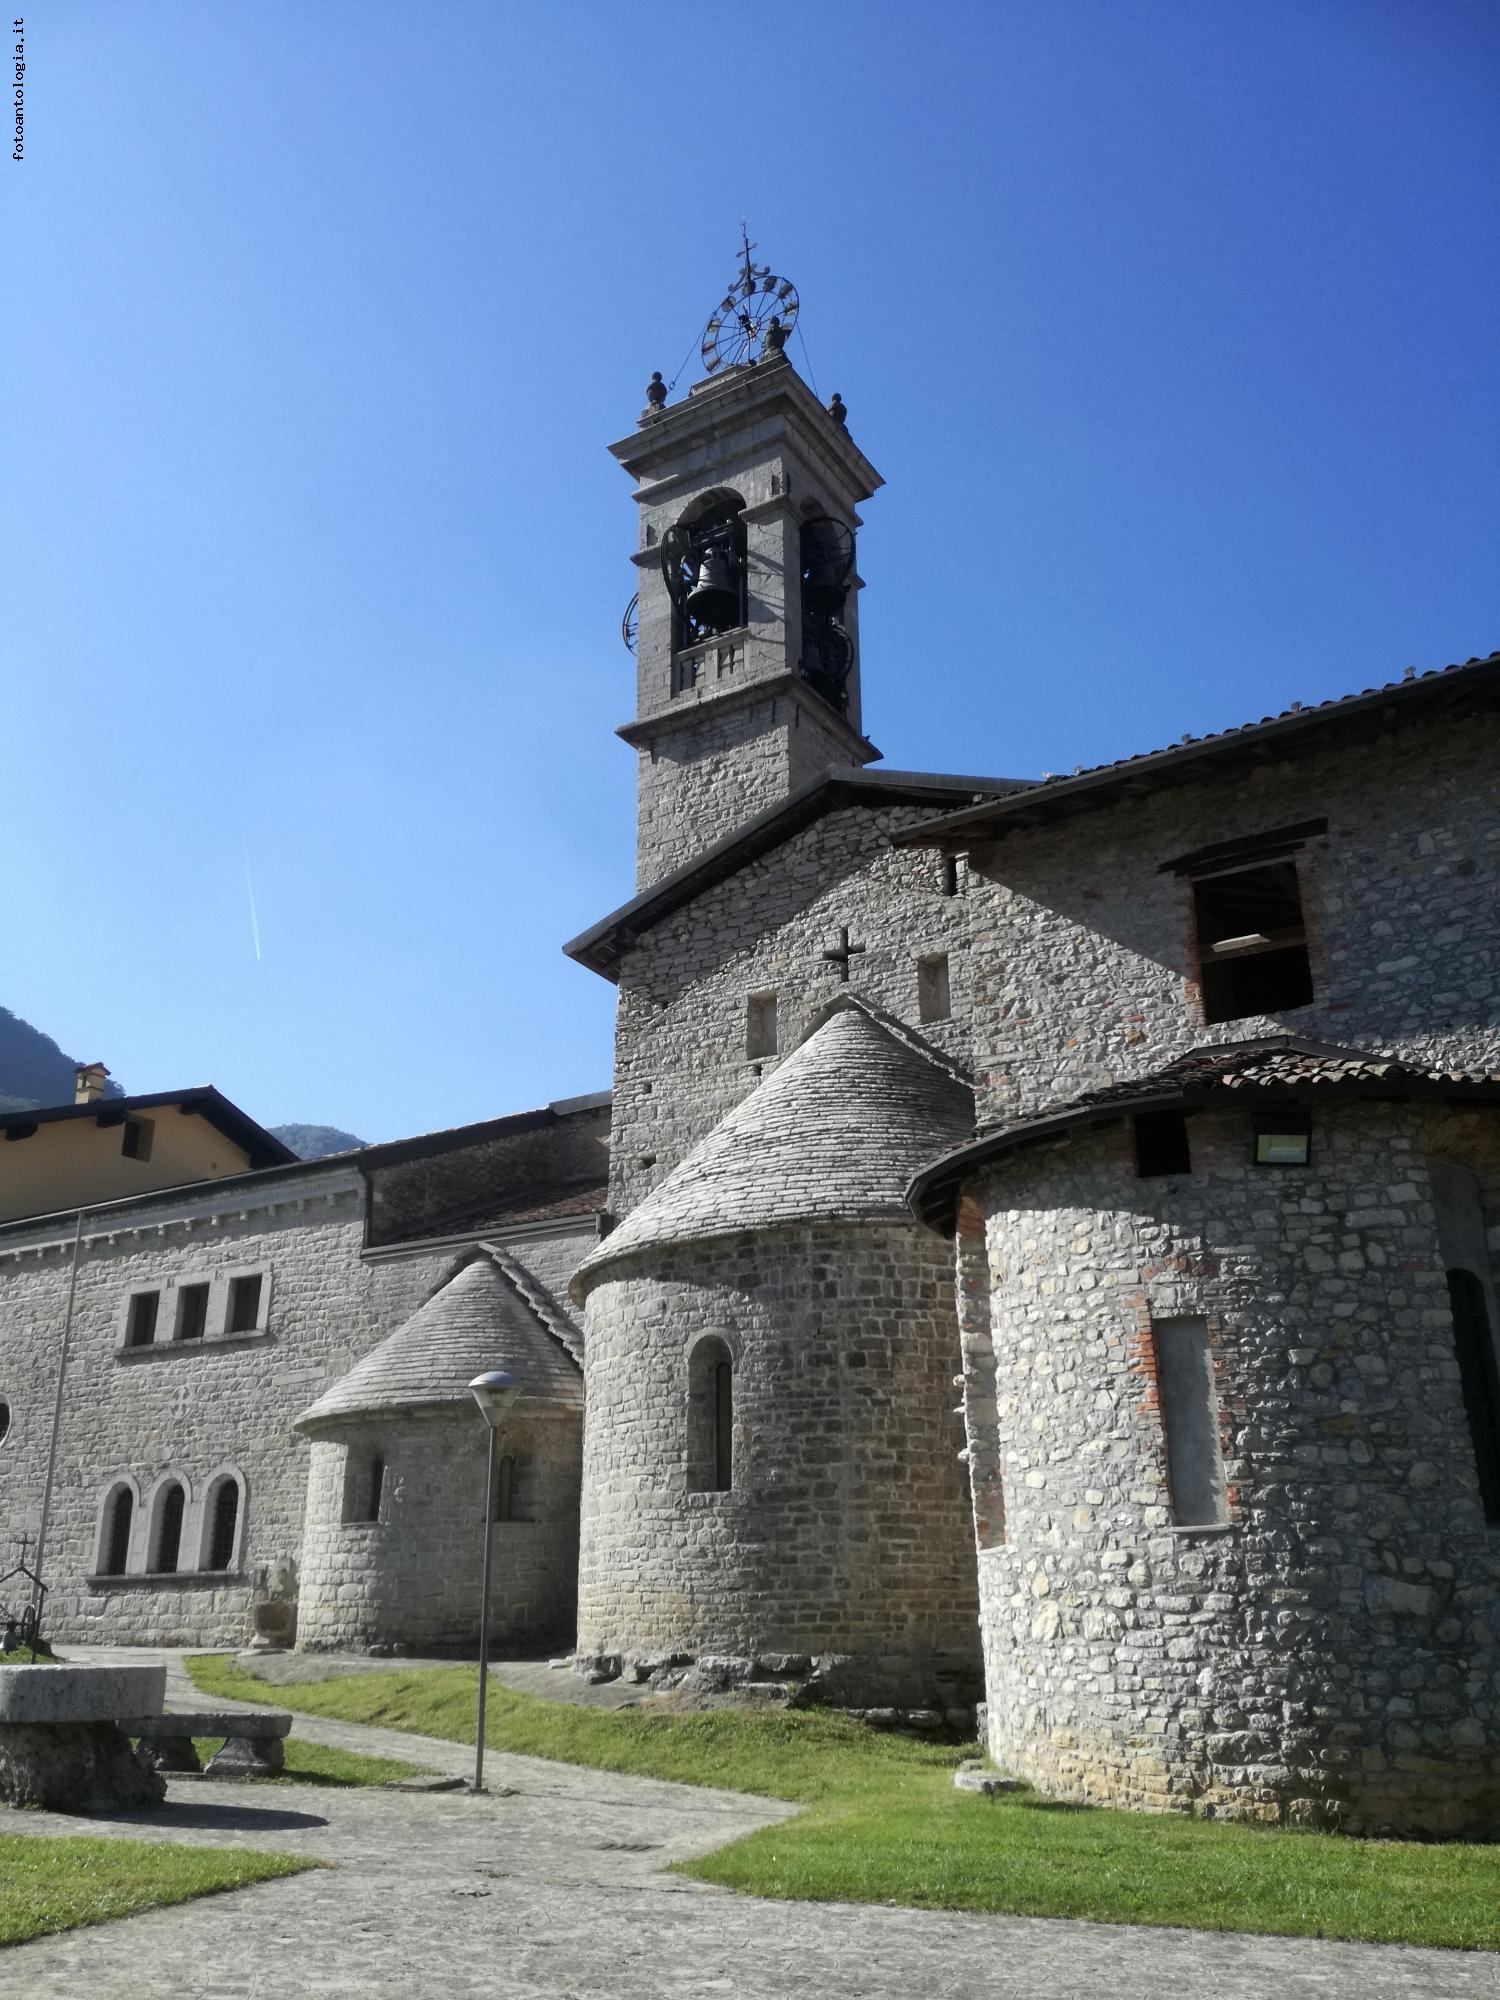 Chiesa Abbazia di San Benedetto – Albino